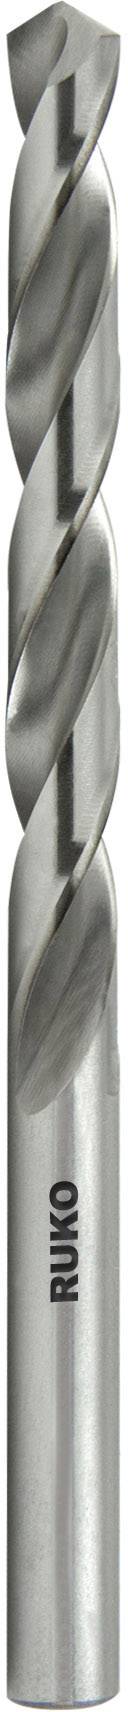 HSS-Spiralbohrer  d=7,0mm DIN 338 mit Zylinderschaft 